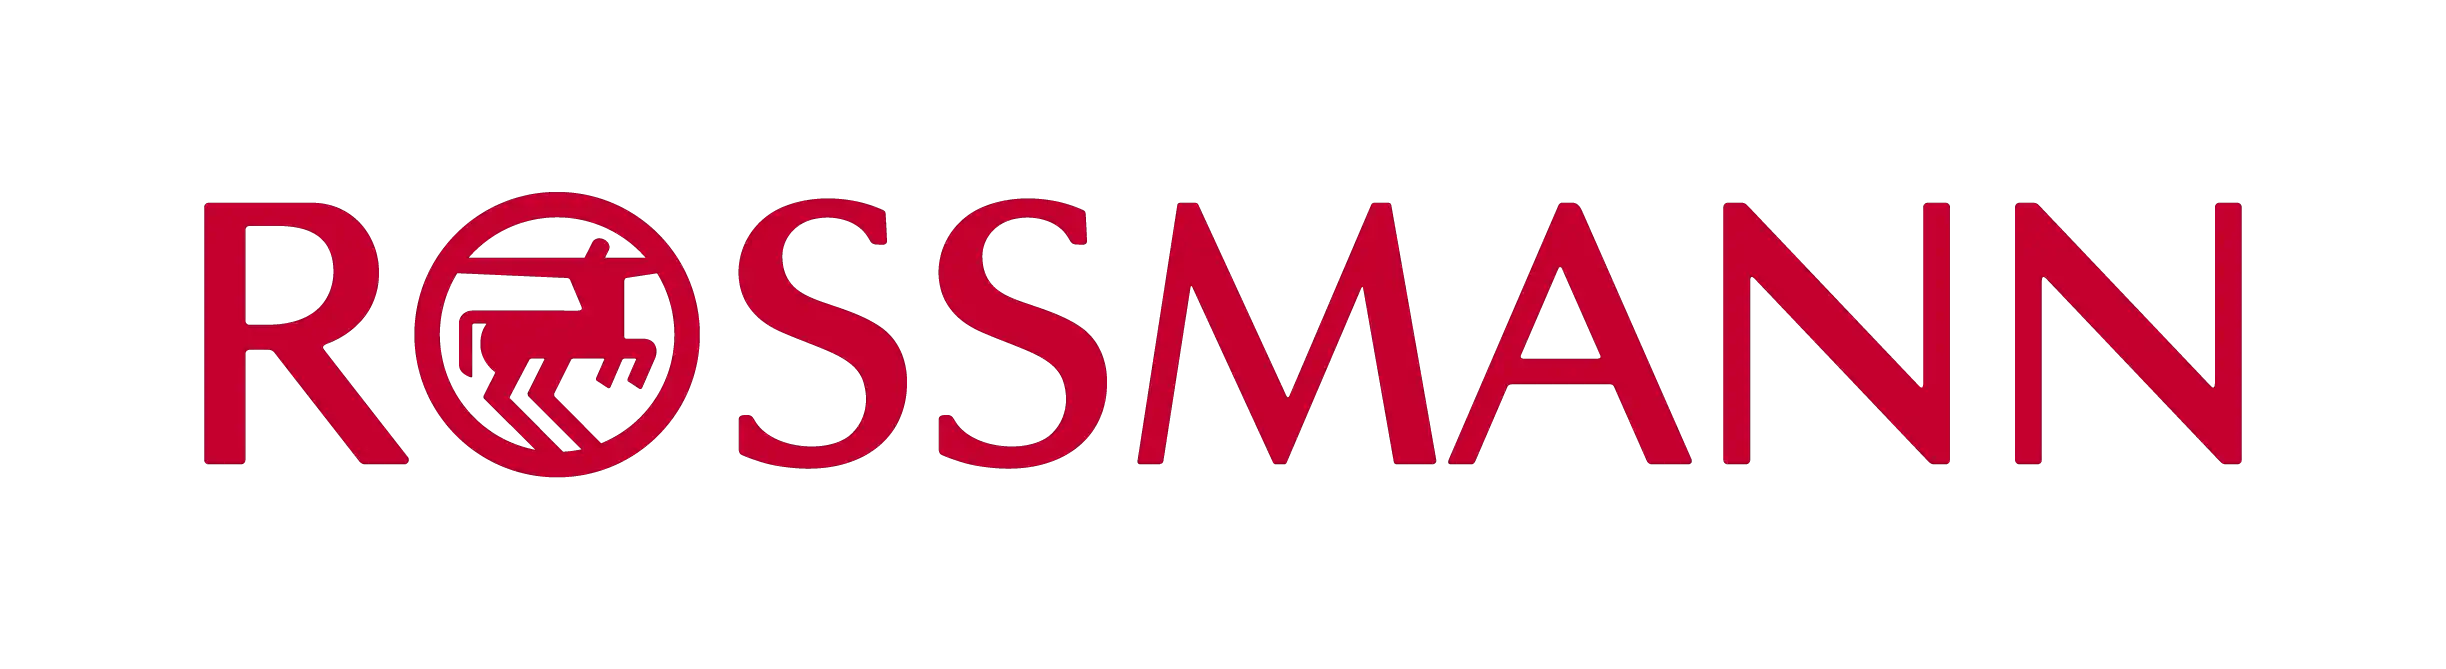 Partner Rossmann logo